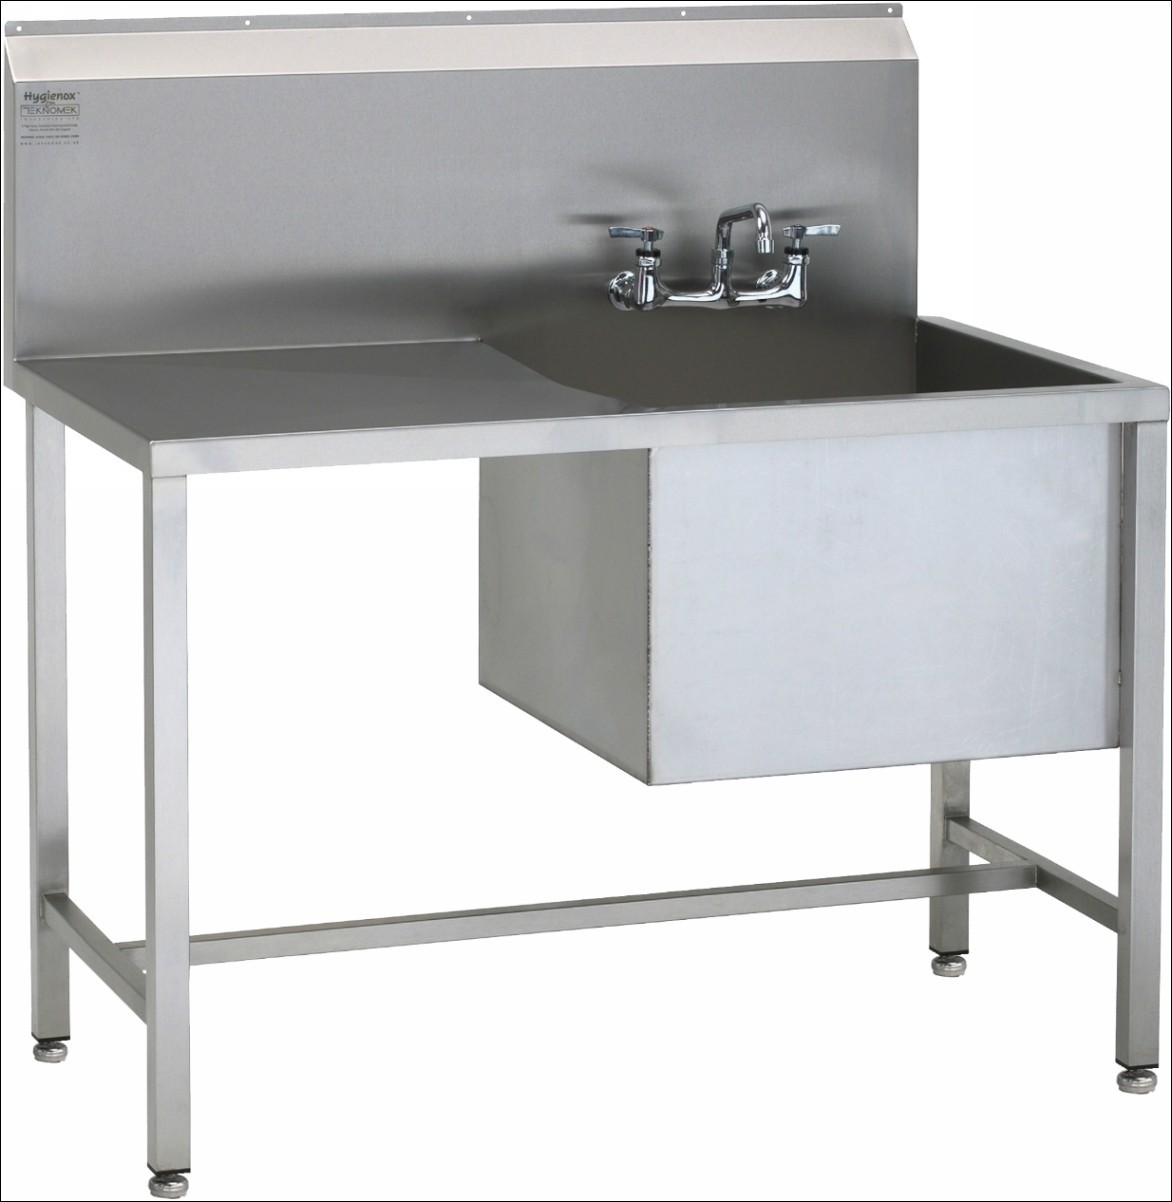 best stainless steel kitchen sink